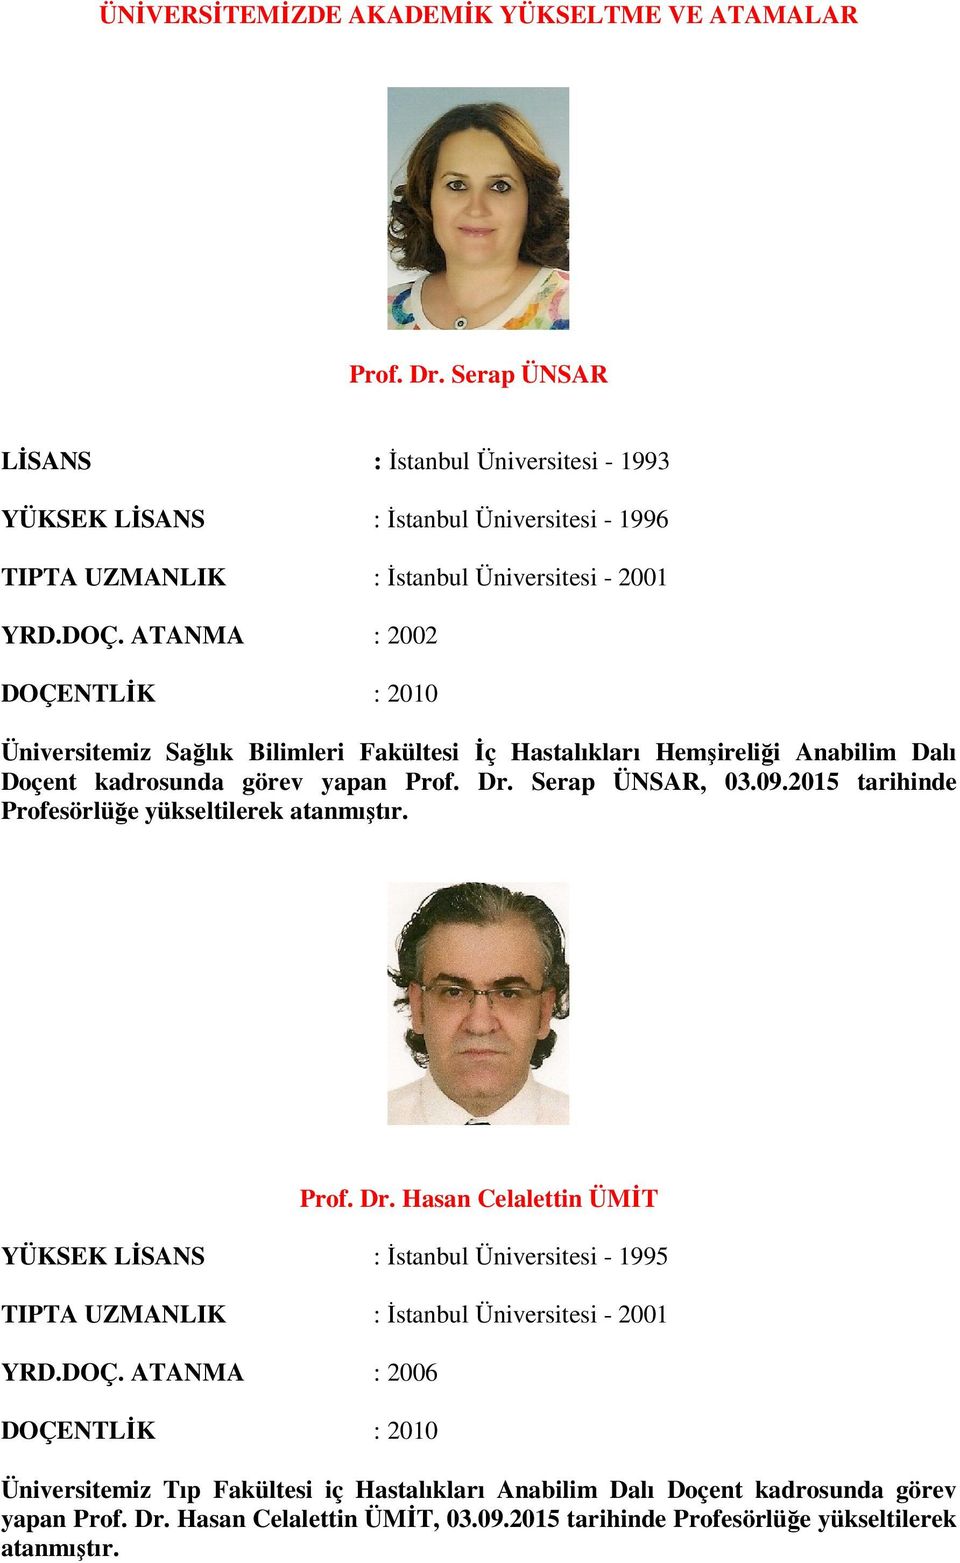 ATANMA : 2002 Üniversitemiz Sağlık Bilimleri Fakültesi Đç Hastalıkları Hemşireliği Anabilim Dalı Doçent kadrosunda görev yapan Prof. Dr. Serap ÜNSAR, 03.09.